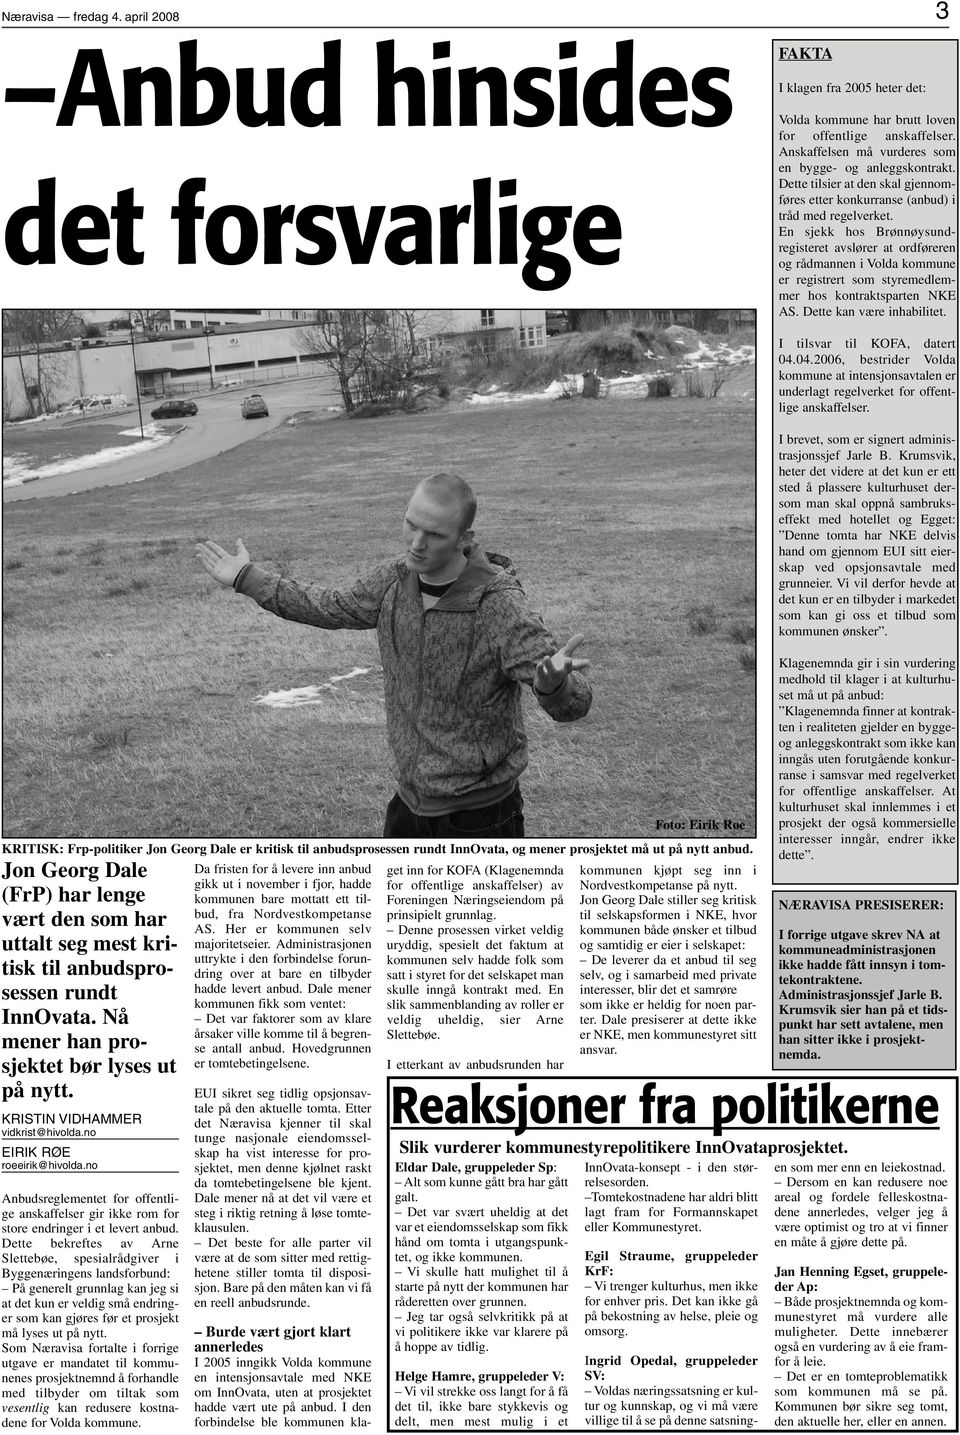 En sjekk hos Brønnøysundregisteret avslører at ordføreren og rådmannen i Volda kommune er registrert som styremedlemmer hos kontraktsparten NKE AS. Dette kan være inhabilitet.